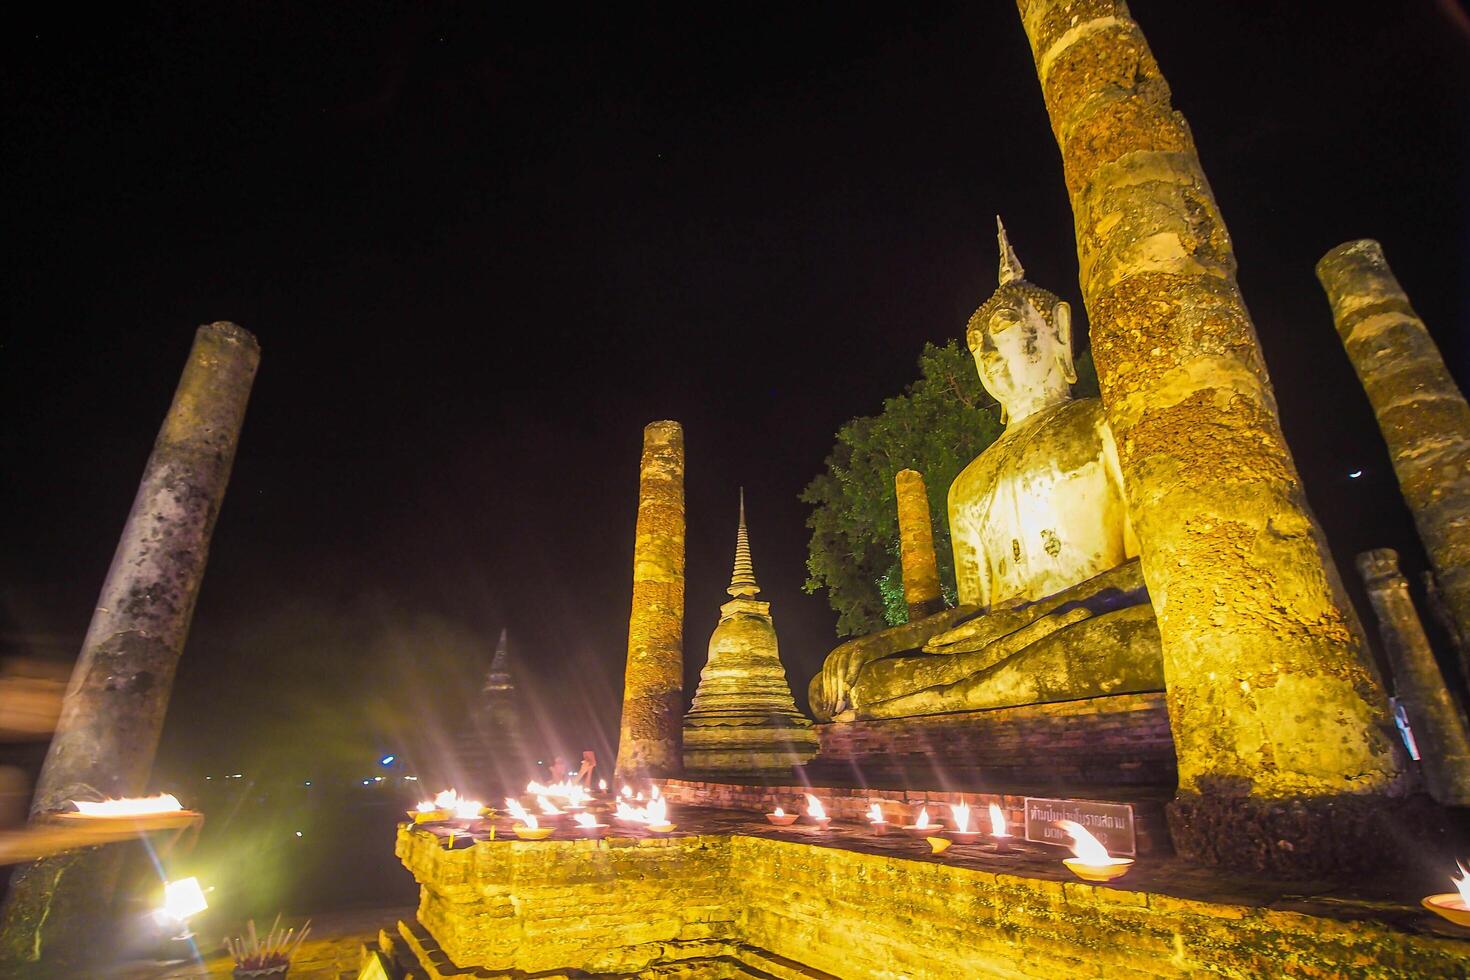 landskap historisk parkera i thailand på natt. de gammal tempel den där presenterar människor är belägen i thailands historisk stad. värld arv. foto